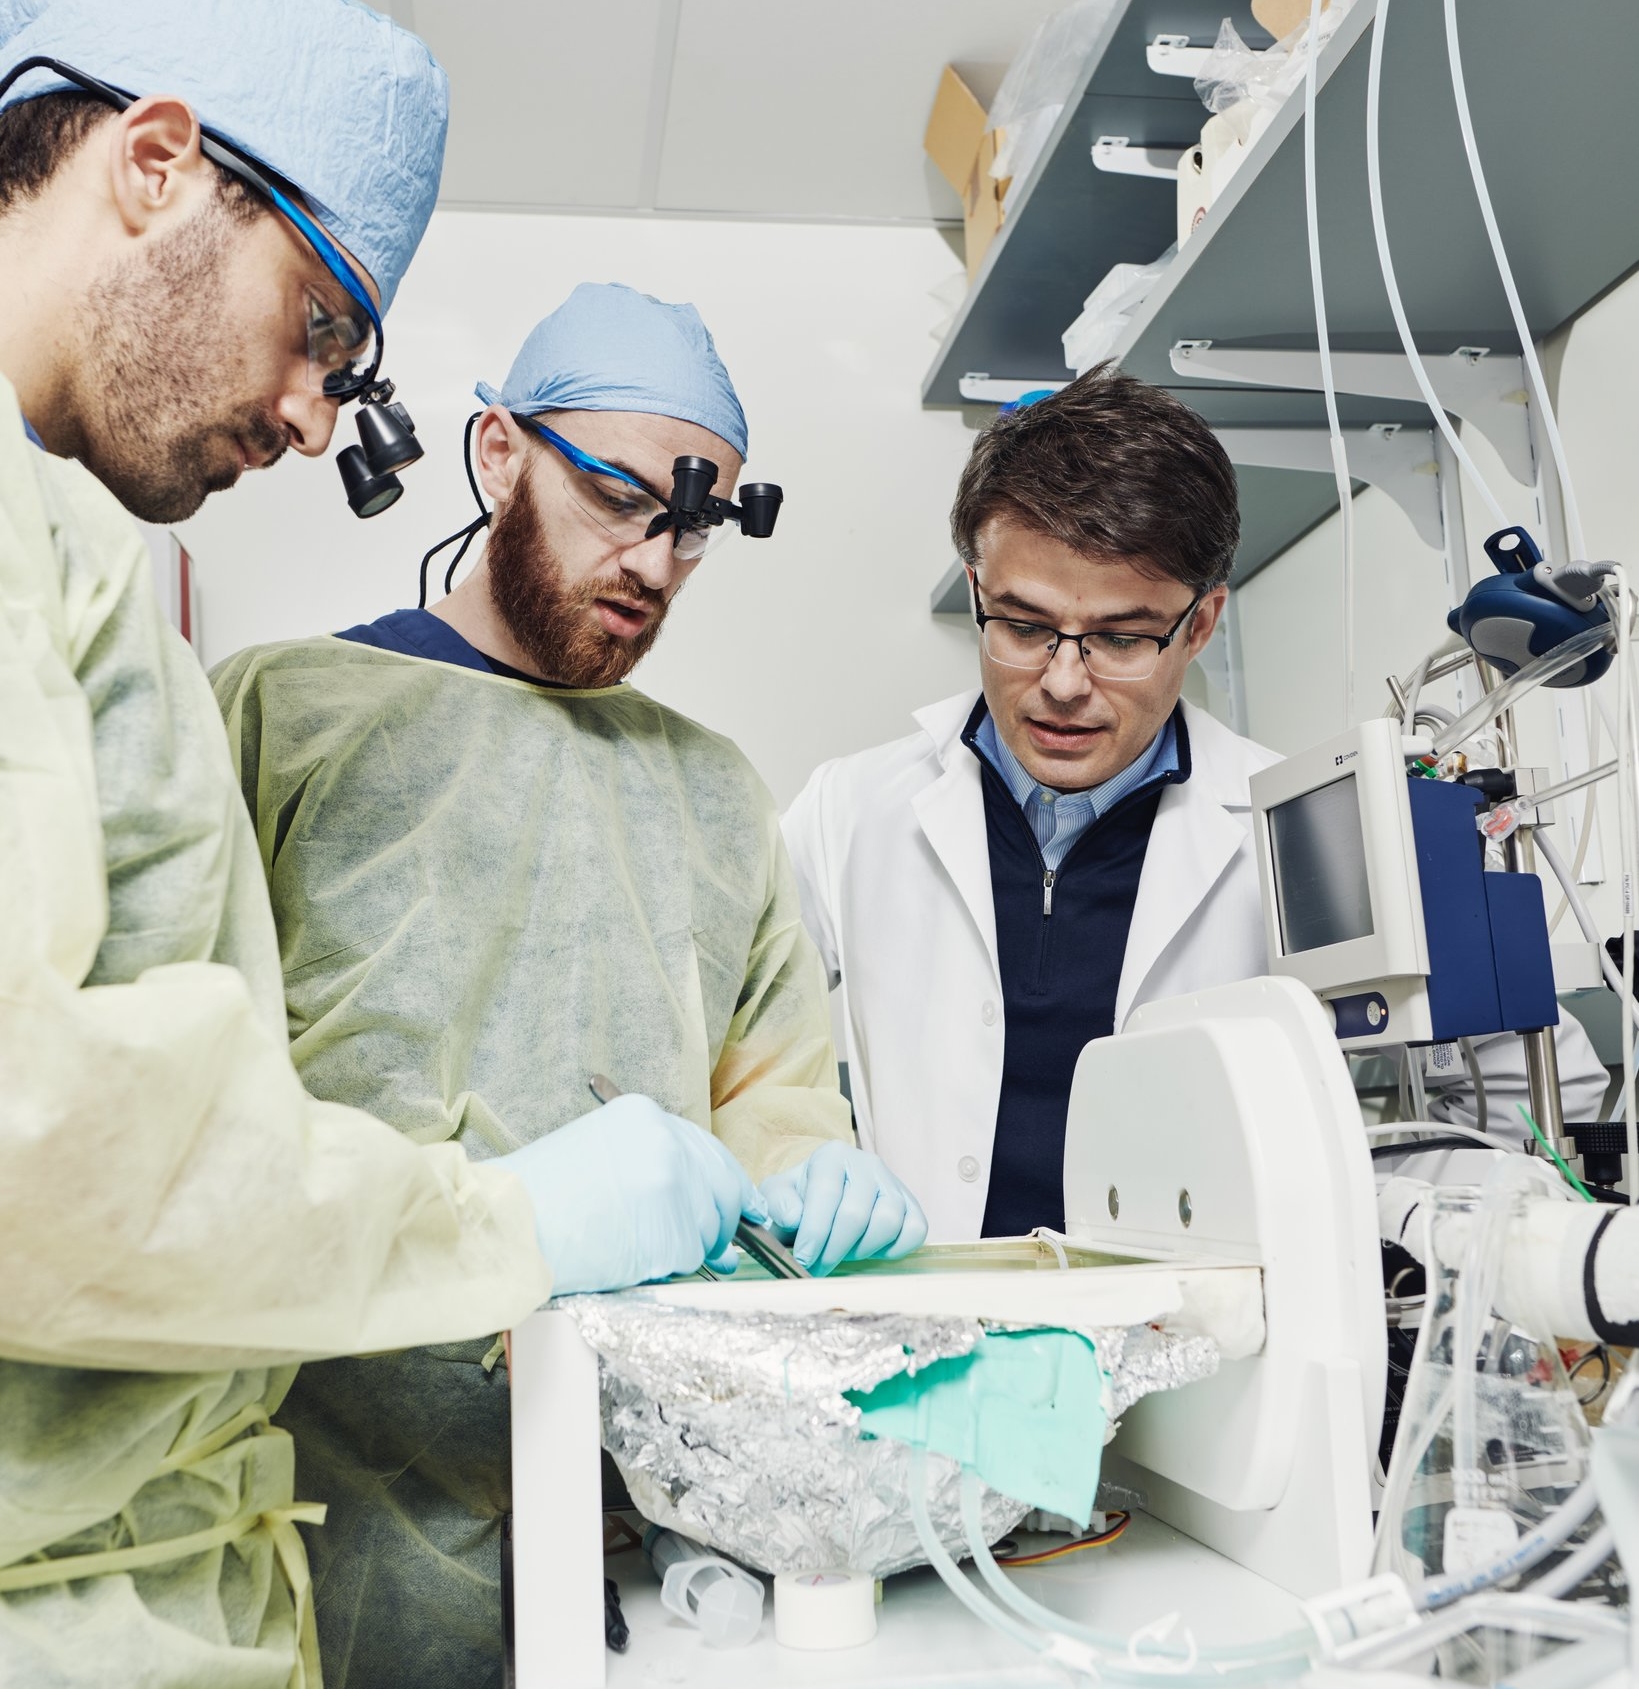 Stefano Daniele, Zvonimir Vrselja và Nenad Sestan (từ trái qua phải) đang làm thí nghiệm với hệ thống tưới máu não BrainEx. Ảnh: New York Times.